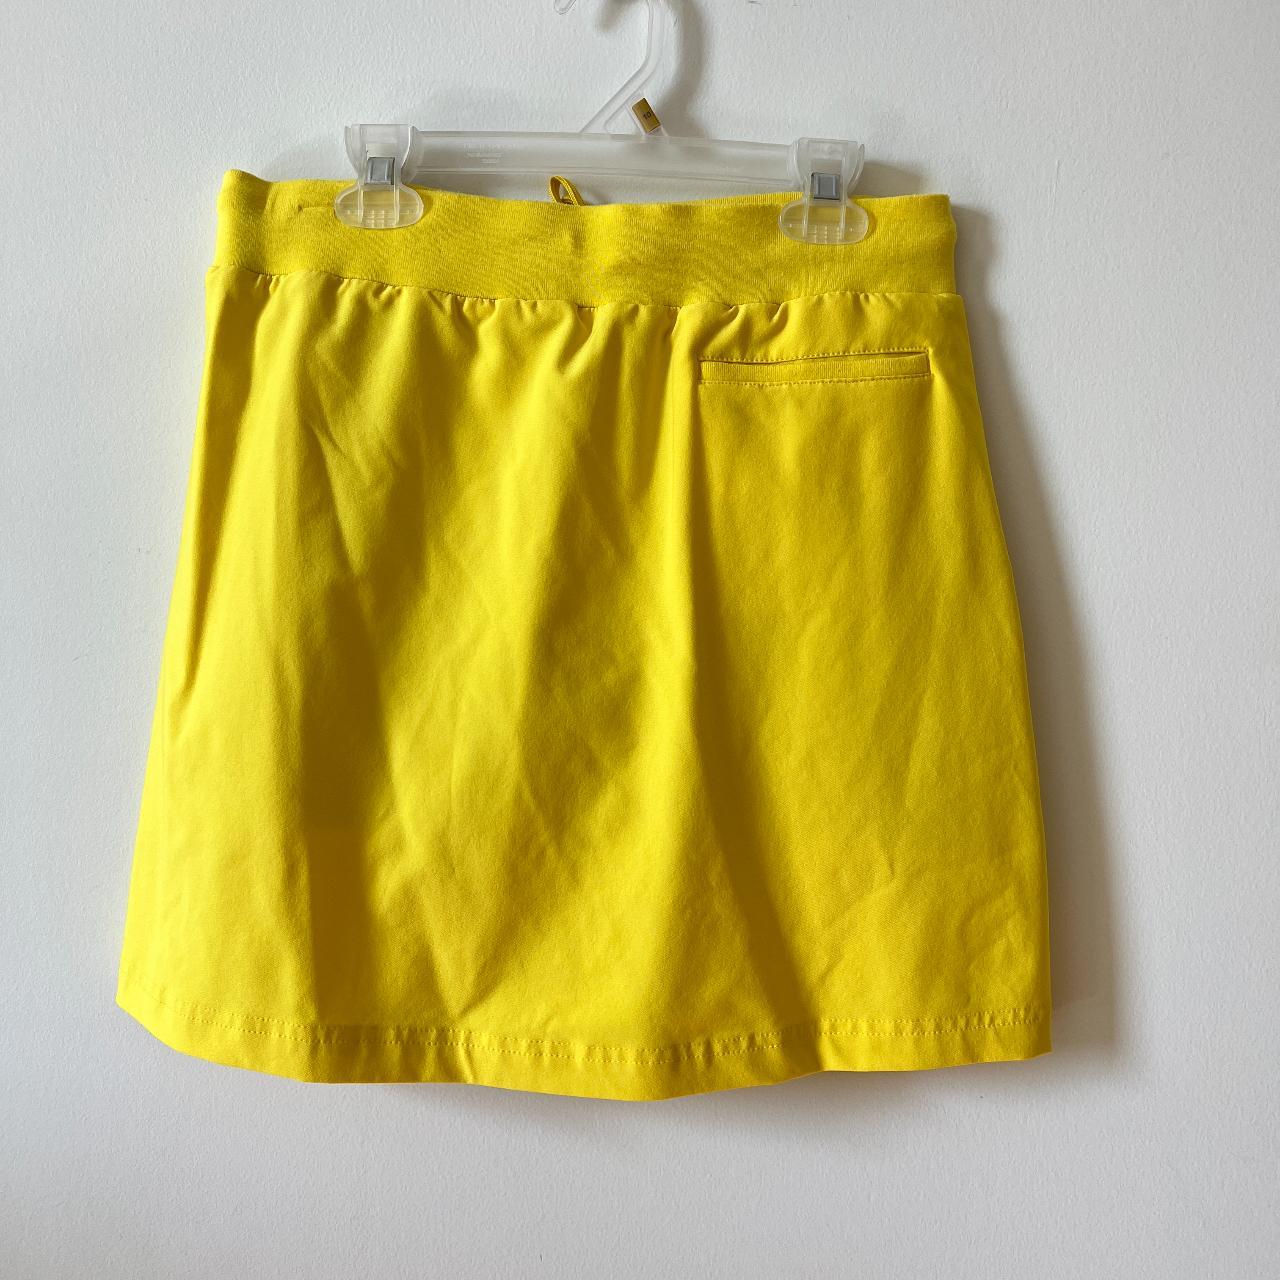 Slazenger Women's Yellow Skirt (2)